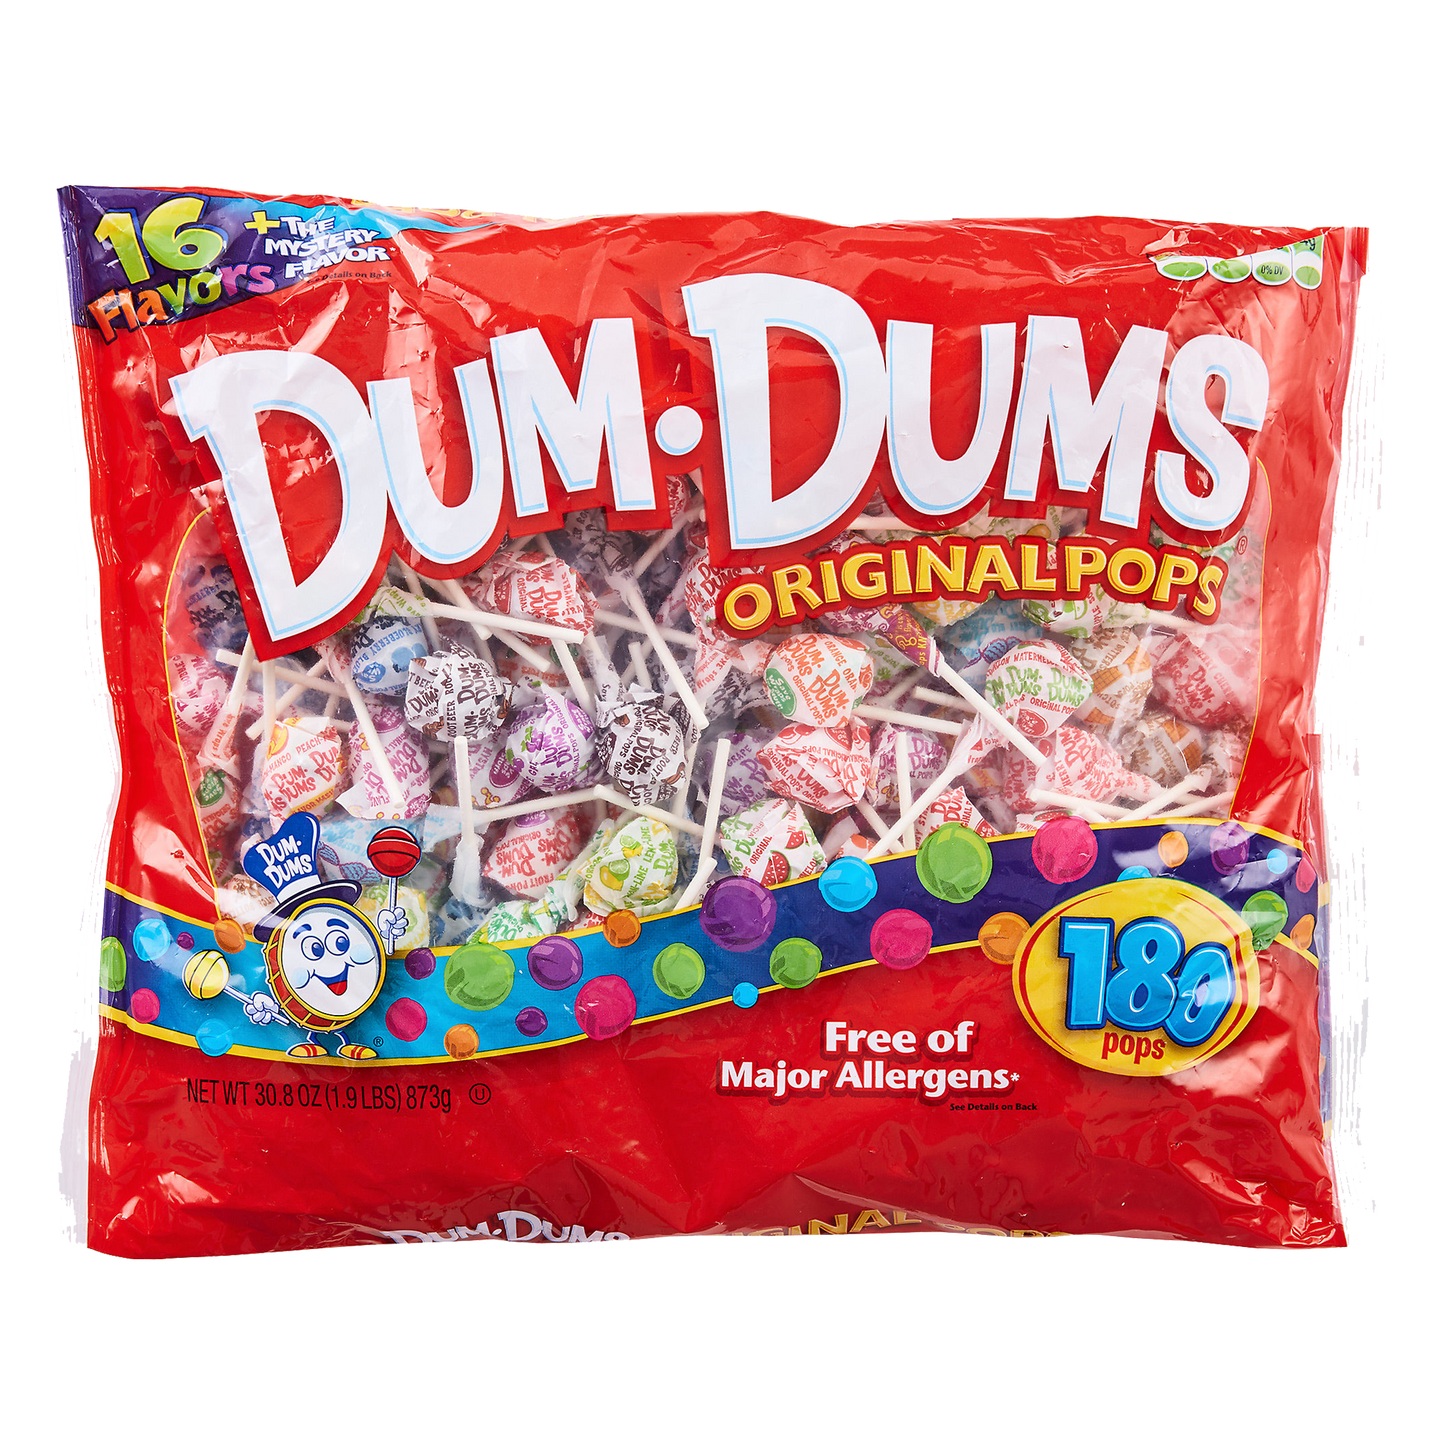 Dum Dums Original Pops 873g-180ct sold by American grocer Uk